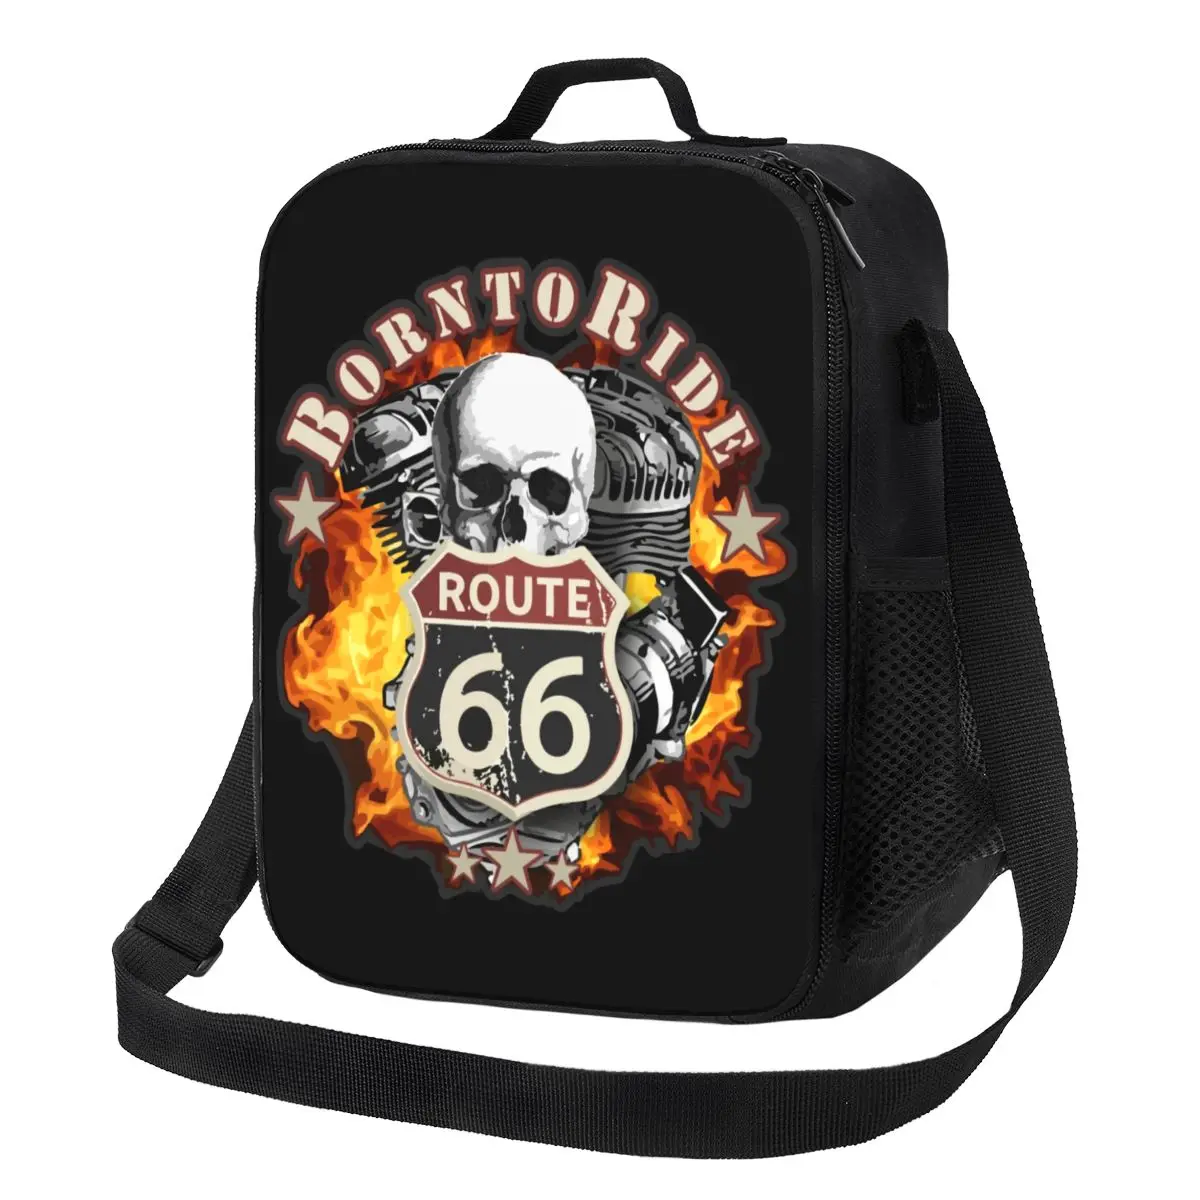 Рожденный ездить Многоразовые ланч-боксы Route 66 для водителей на чоппере мотоциклах Термоохладитель Еда Изолированная сумка для ланча Детская школа - 0